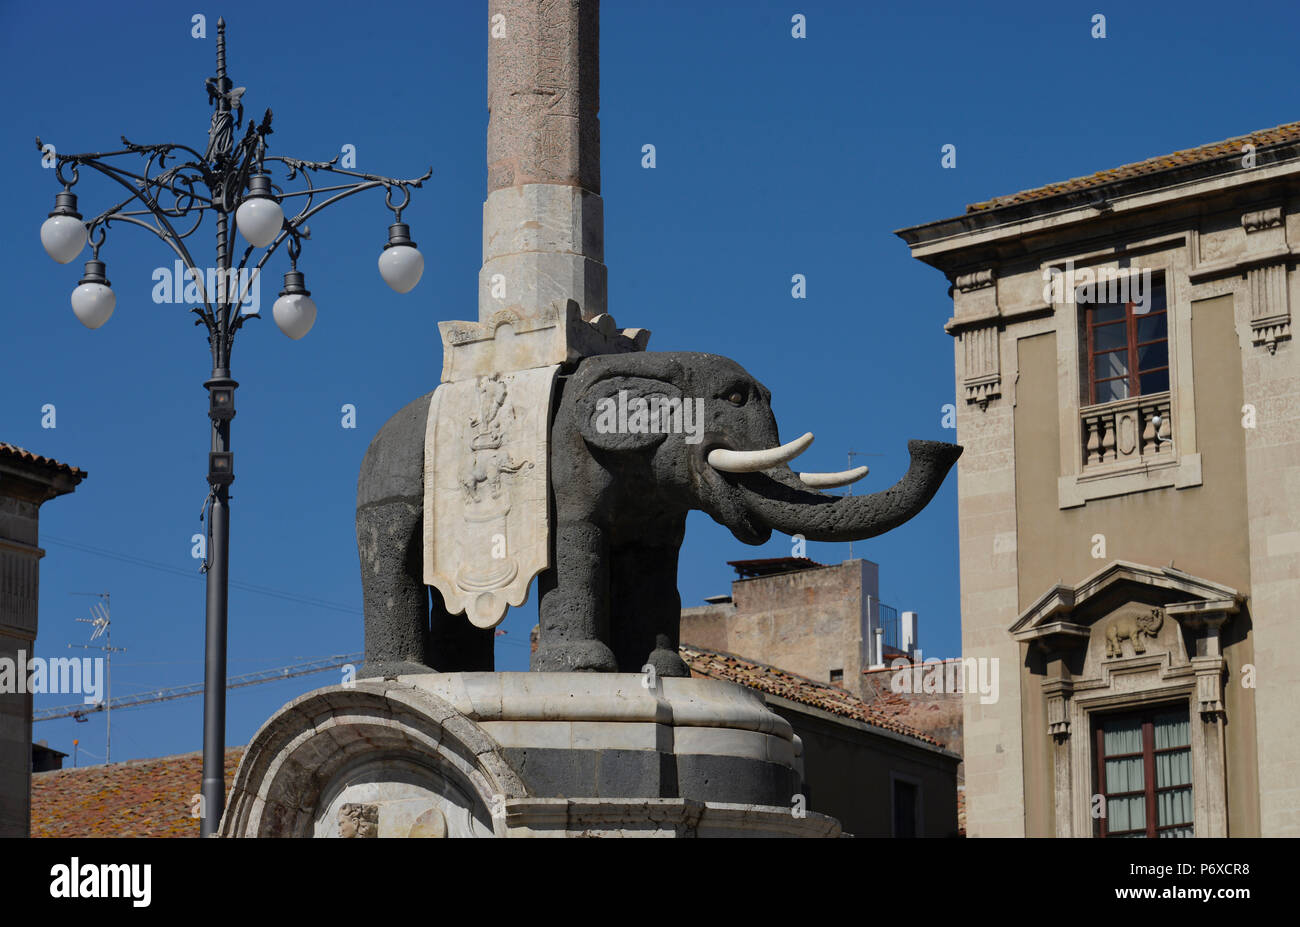 Elefantenbrunnen, Piazza Duomo, Catania, sicilia, Italie Banque D'Images